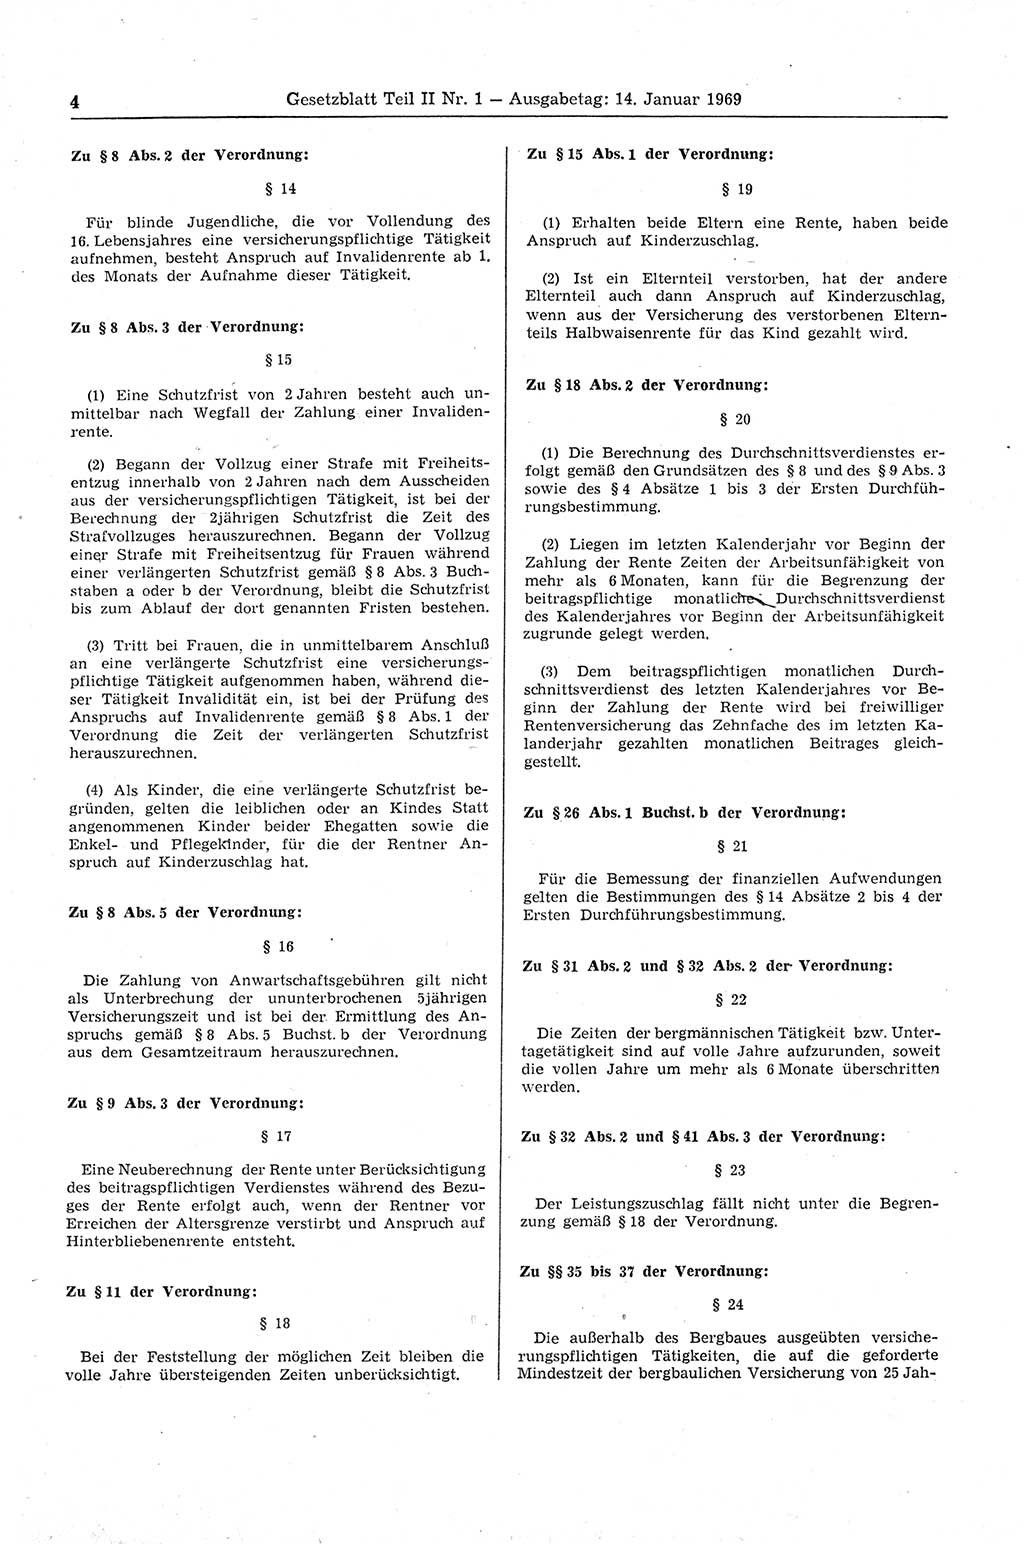 Gesetzblatt (GBl.) der Deutschen Demokratischen Republik (DDR) Teil ⅠⅠ 1969, Seite 4 (GBl. DDR ⅠⅠ 1969, S. 4)